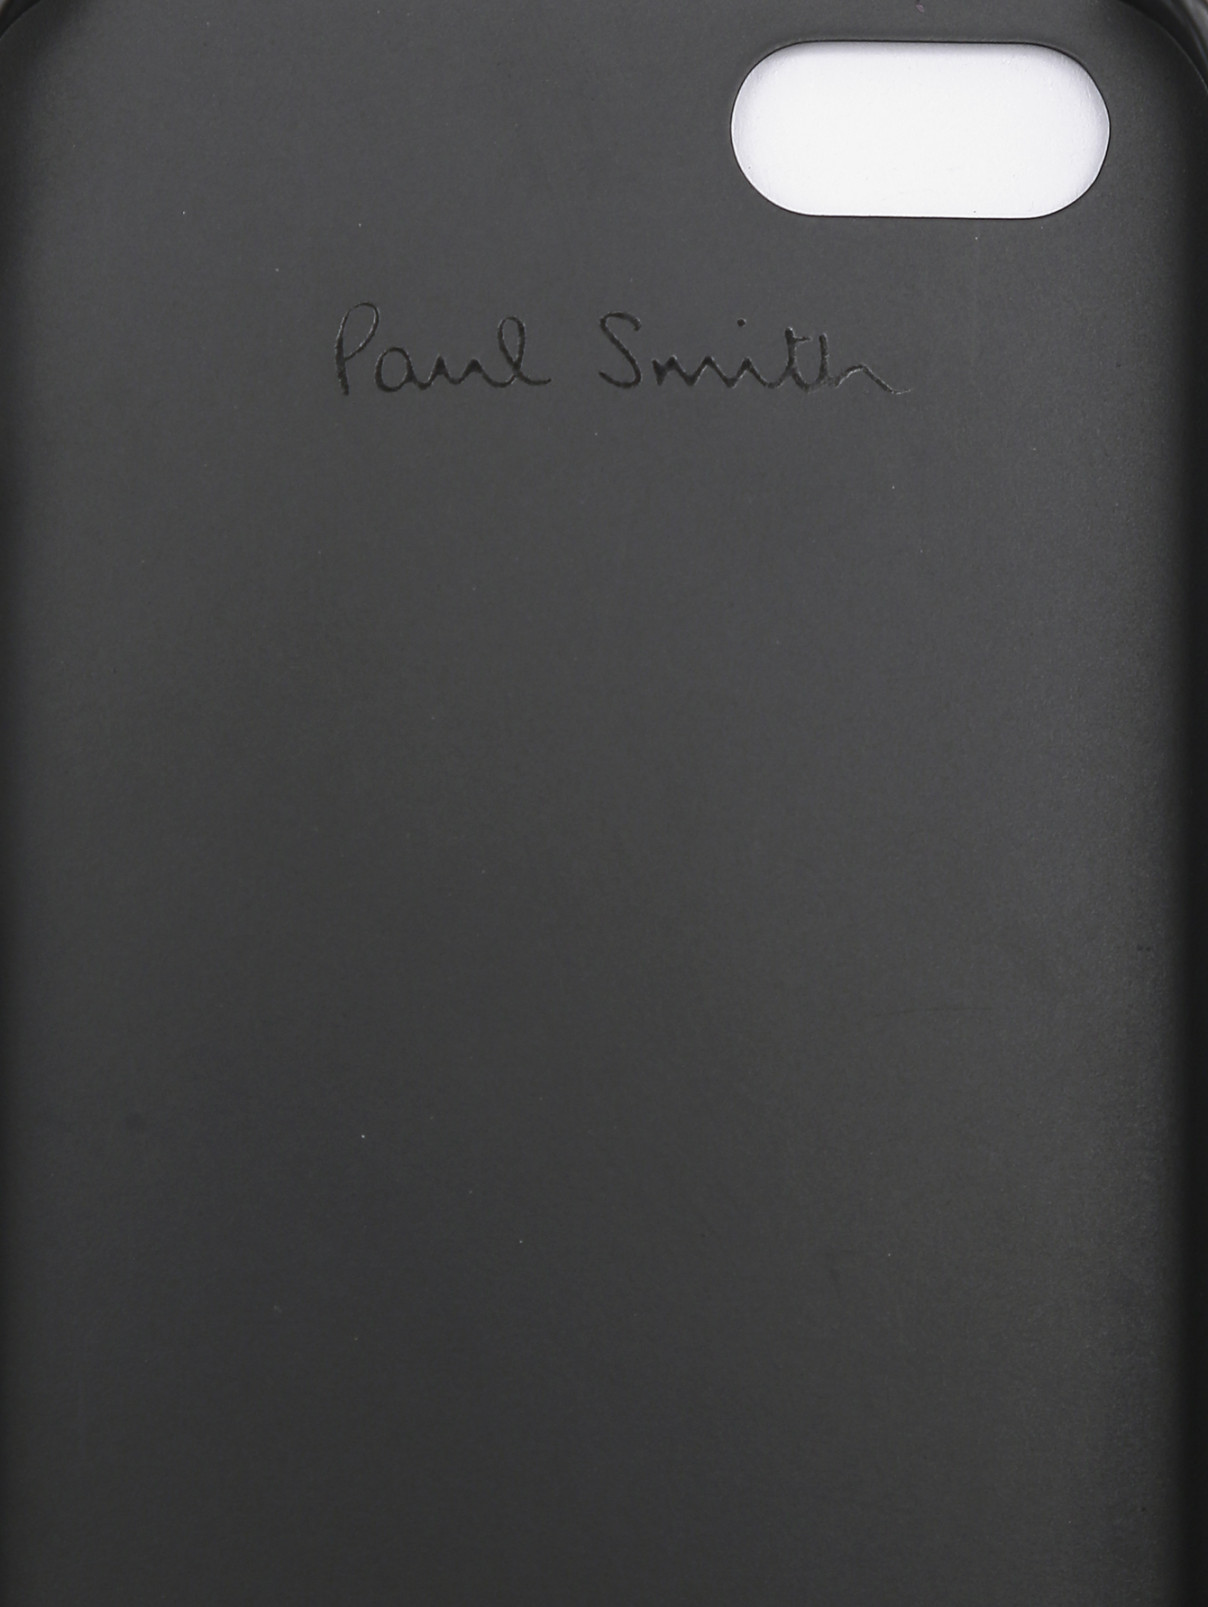 Чехол для IPhone с узором Paul Smith  –  Деталь1  – Цвет:  Коричневый